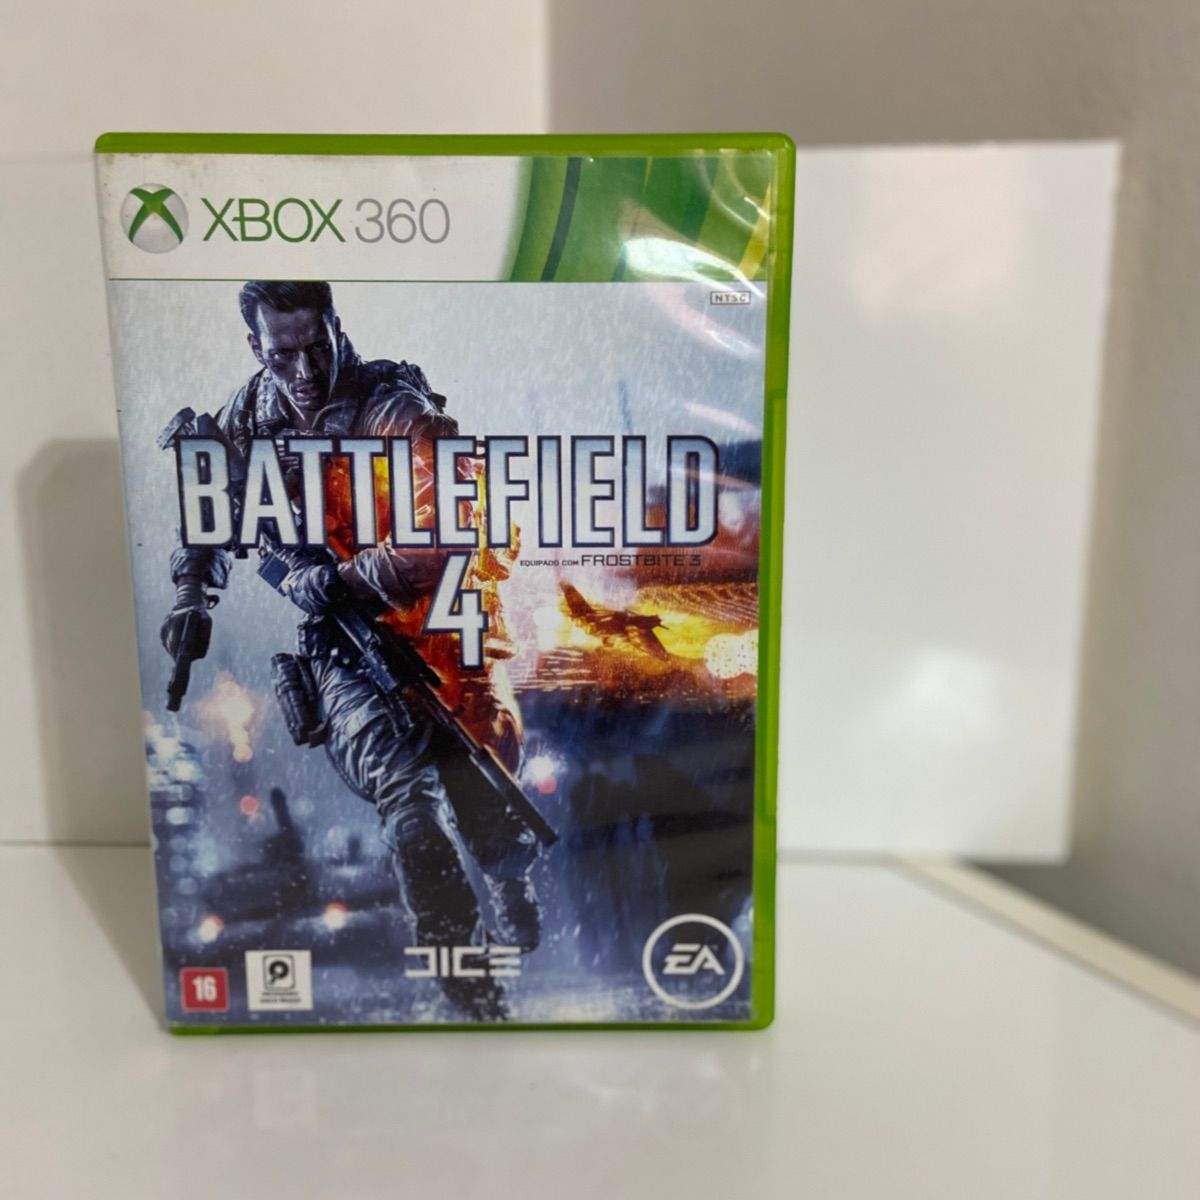 Battlefield 4 Jogo Xbox One Midia Digital